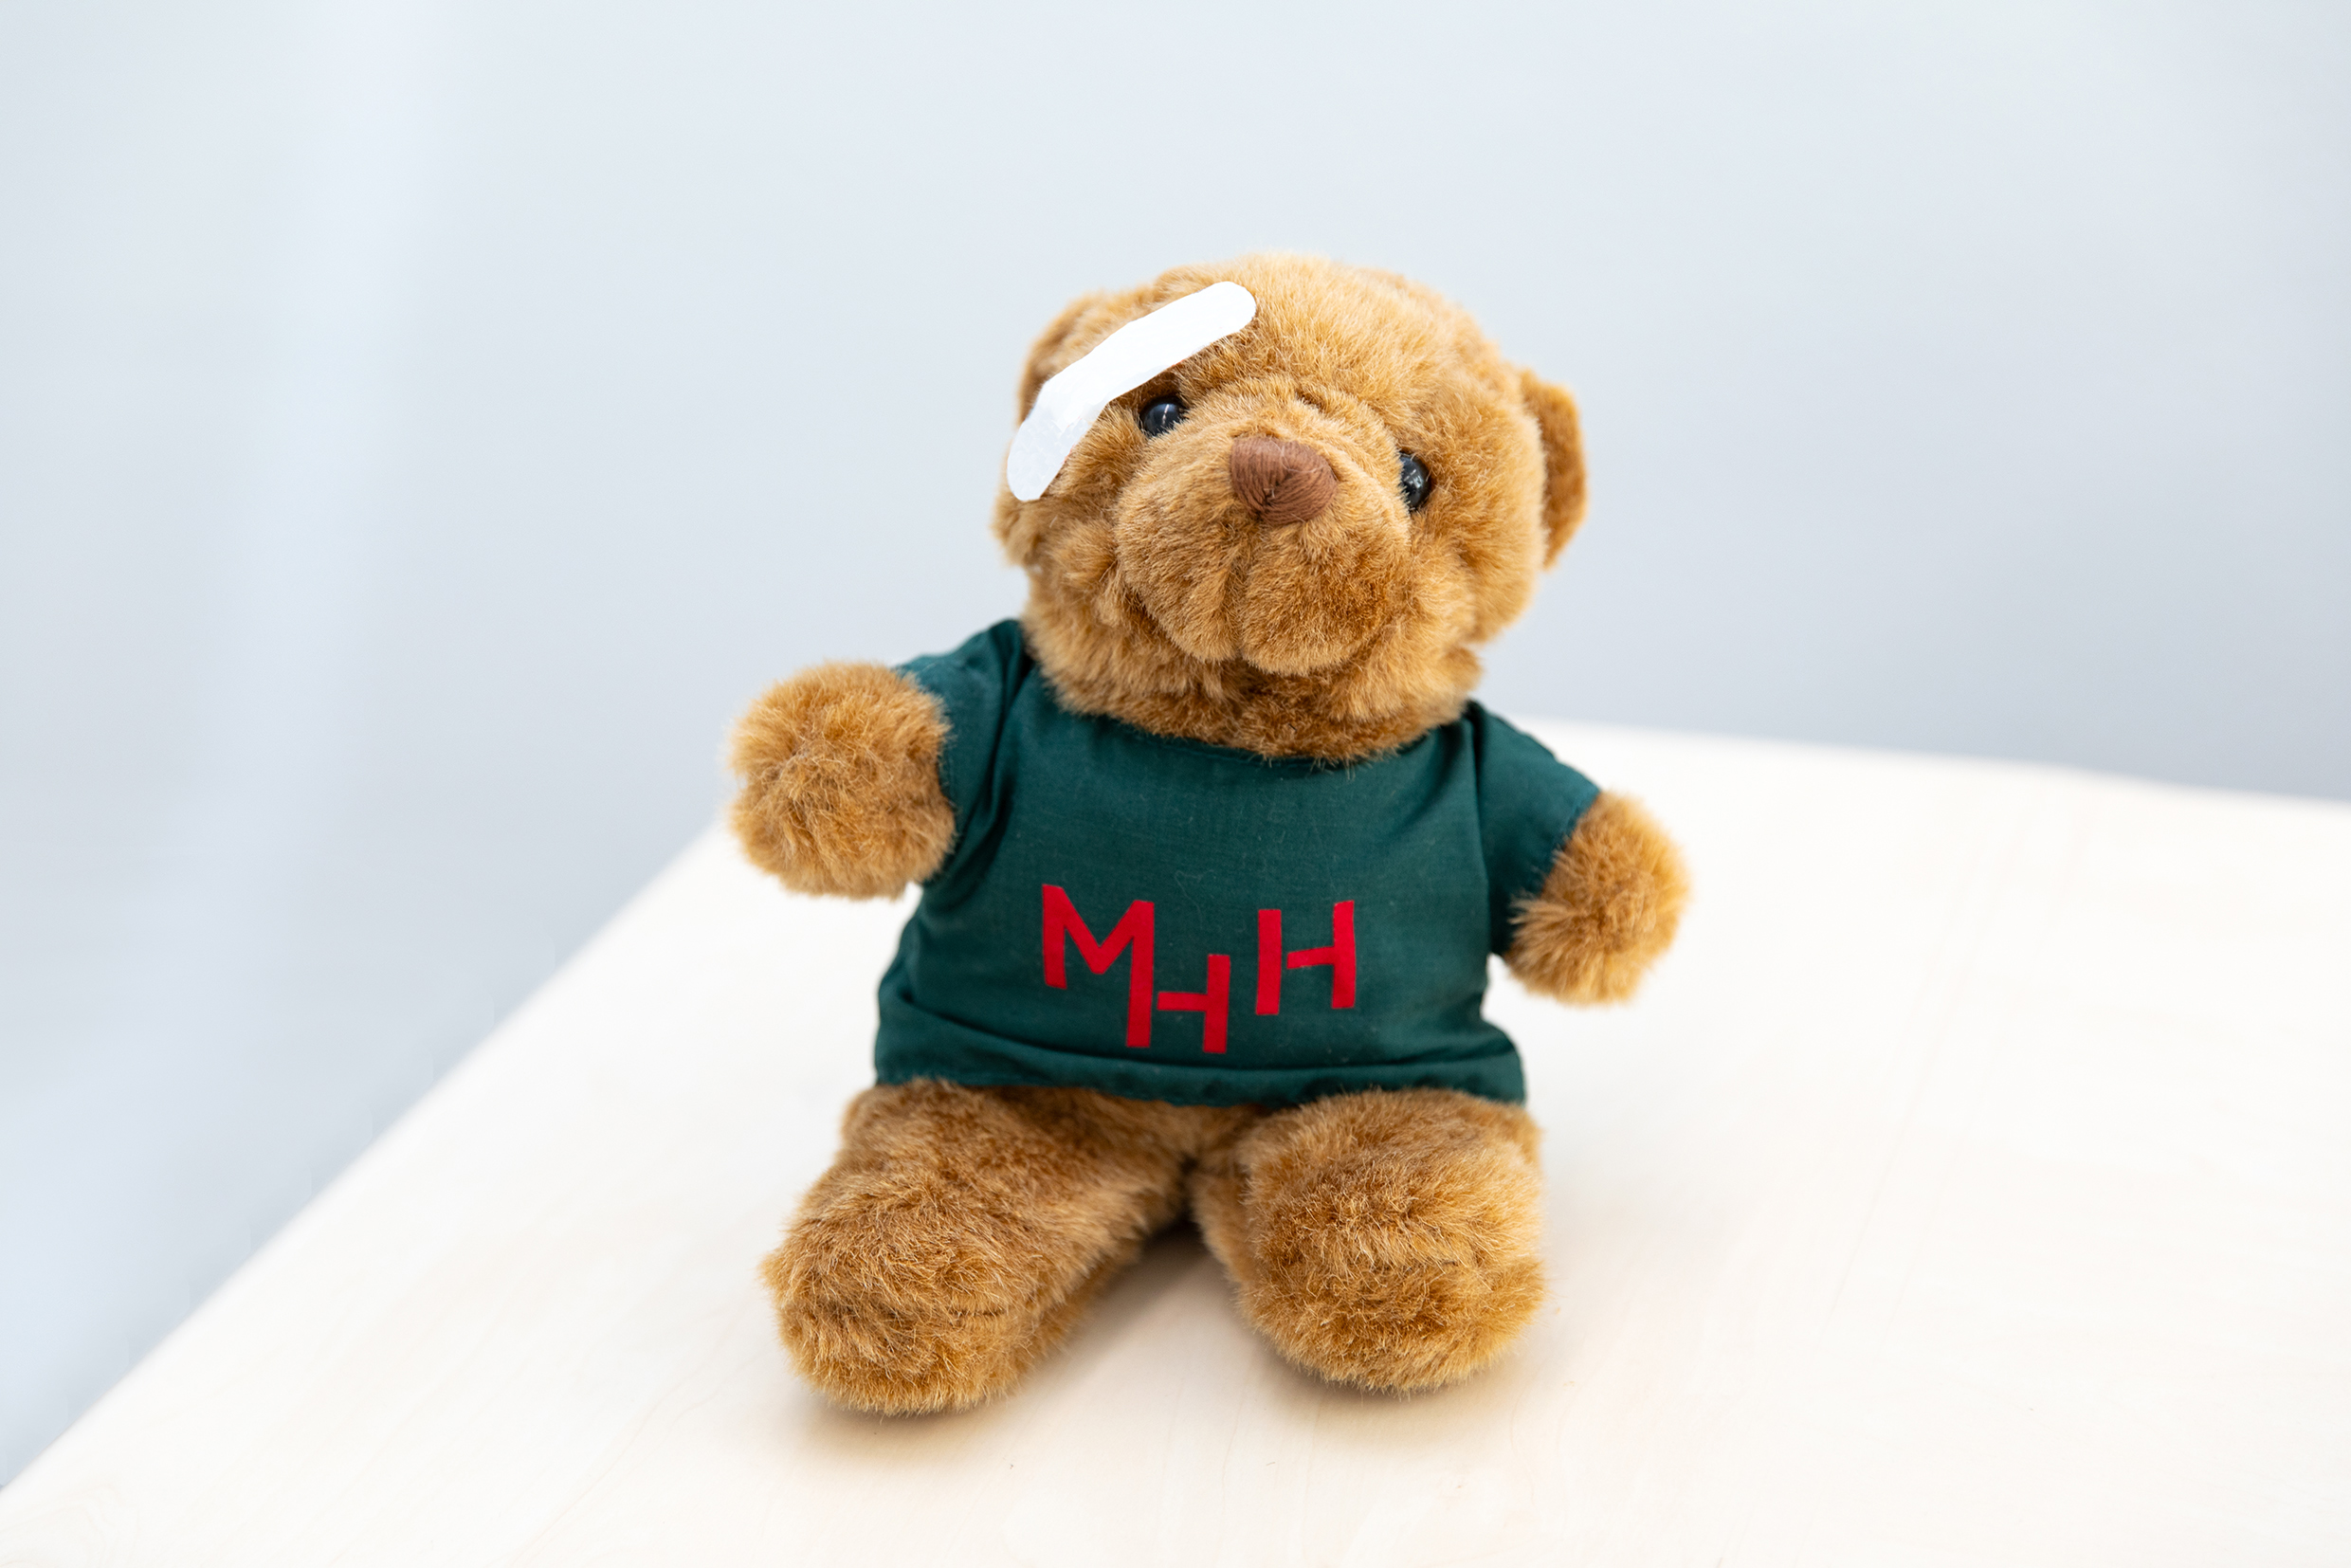 ein Teddybär trägt ein dunkelgrünes T-Shirt mit rotem MHH-Aufdruck. Über seinem Auge klebt ein kleines weißes Pflaster